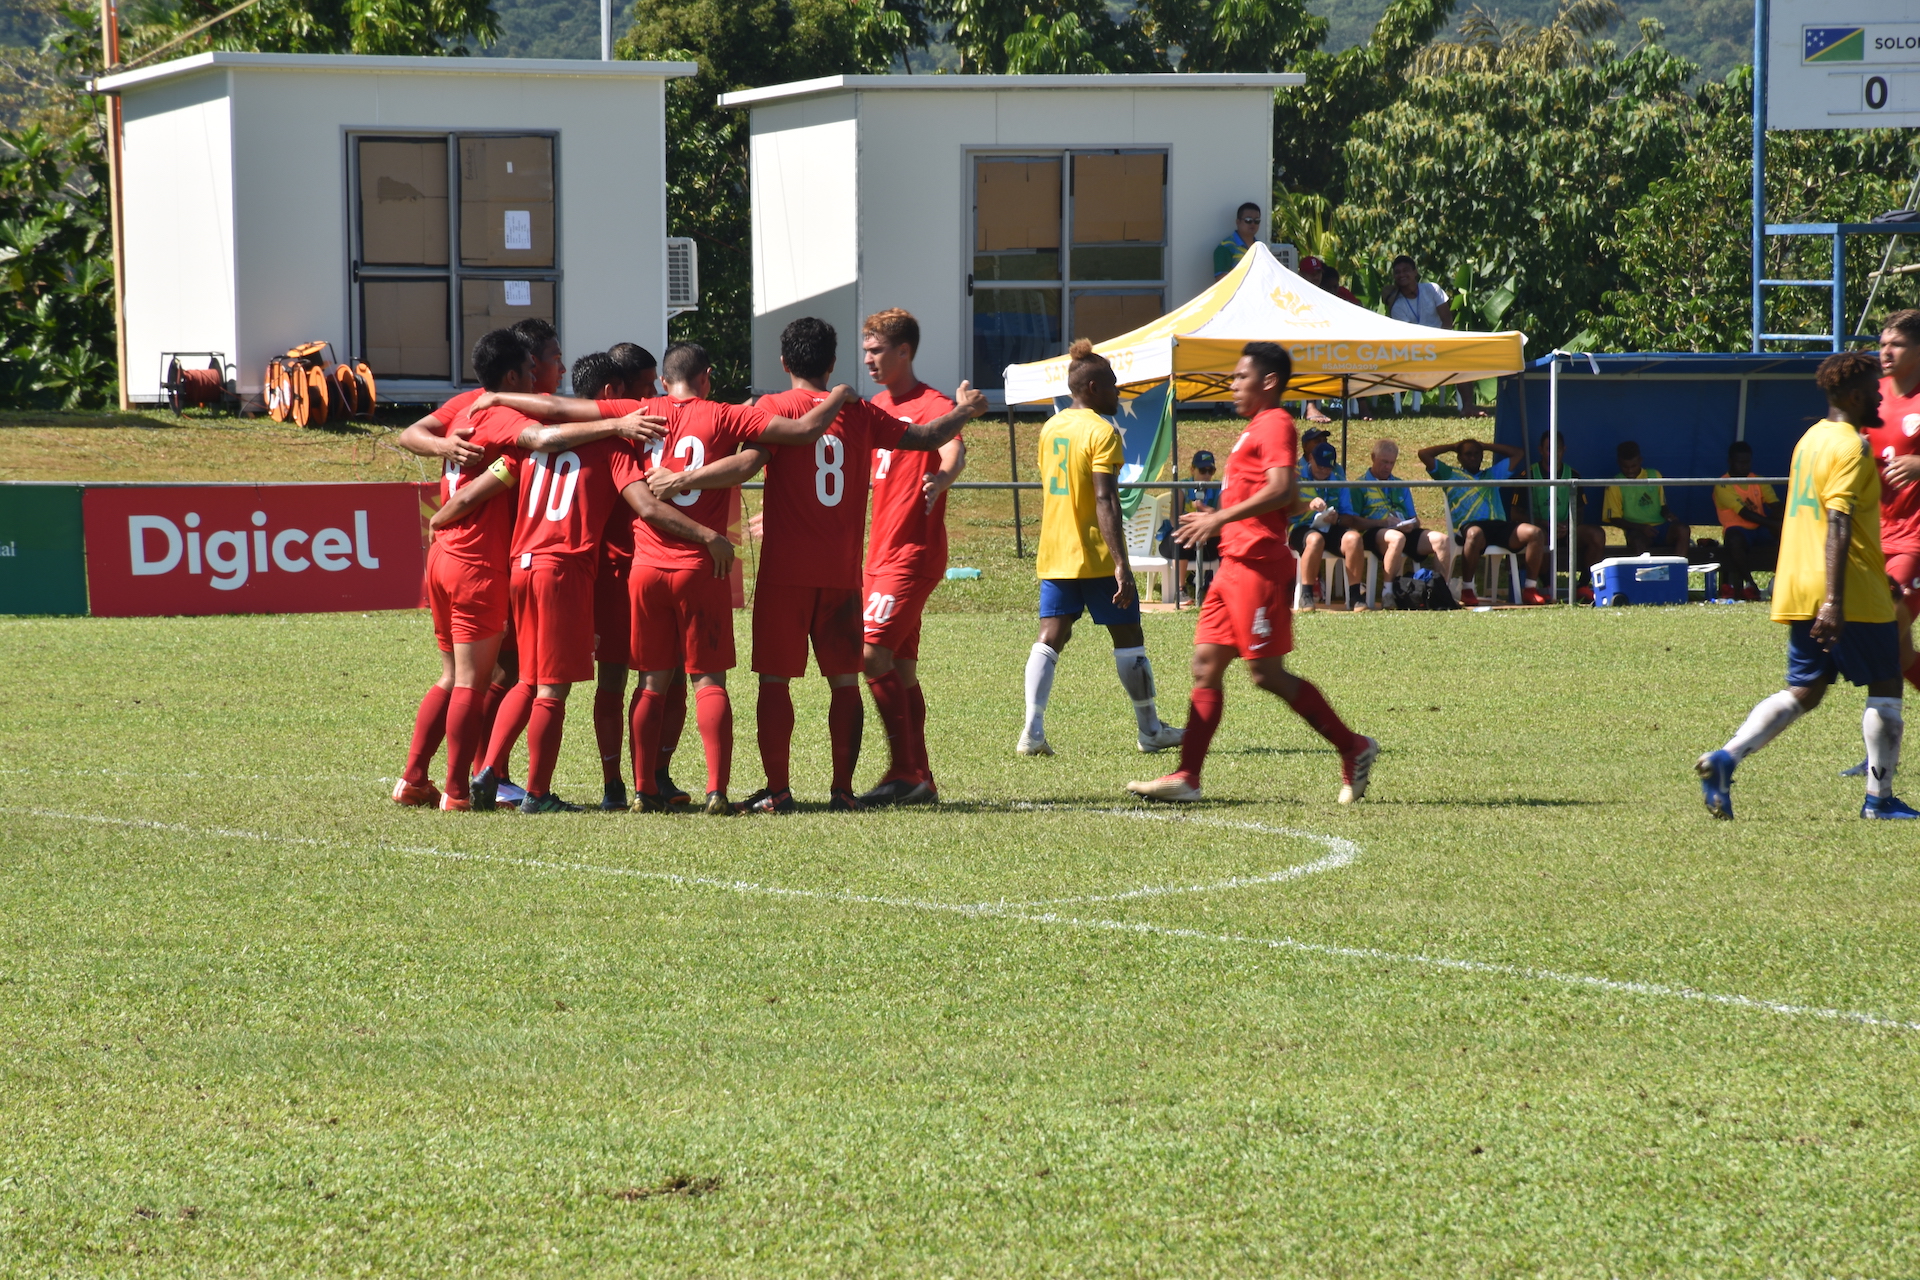 Les footballeurs tahitiens enchaînent une deuxième victoire aux Jeux du Pacifique. Après leur victoire facile 7-0 face à Tuvalu mercredi.